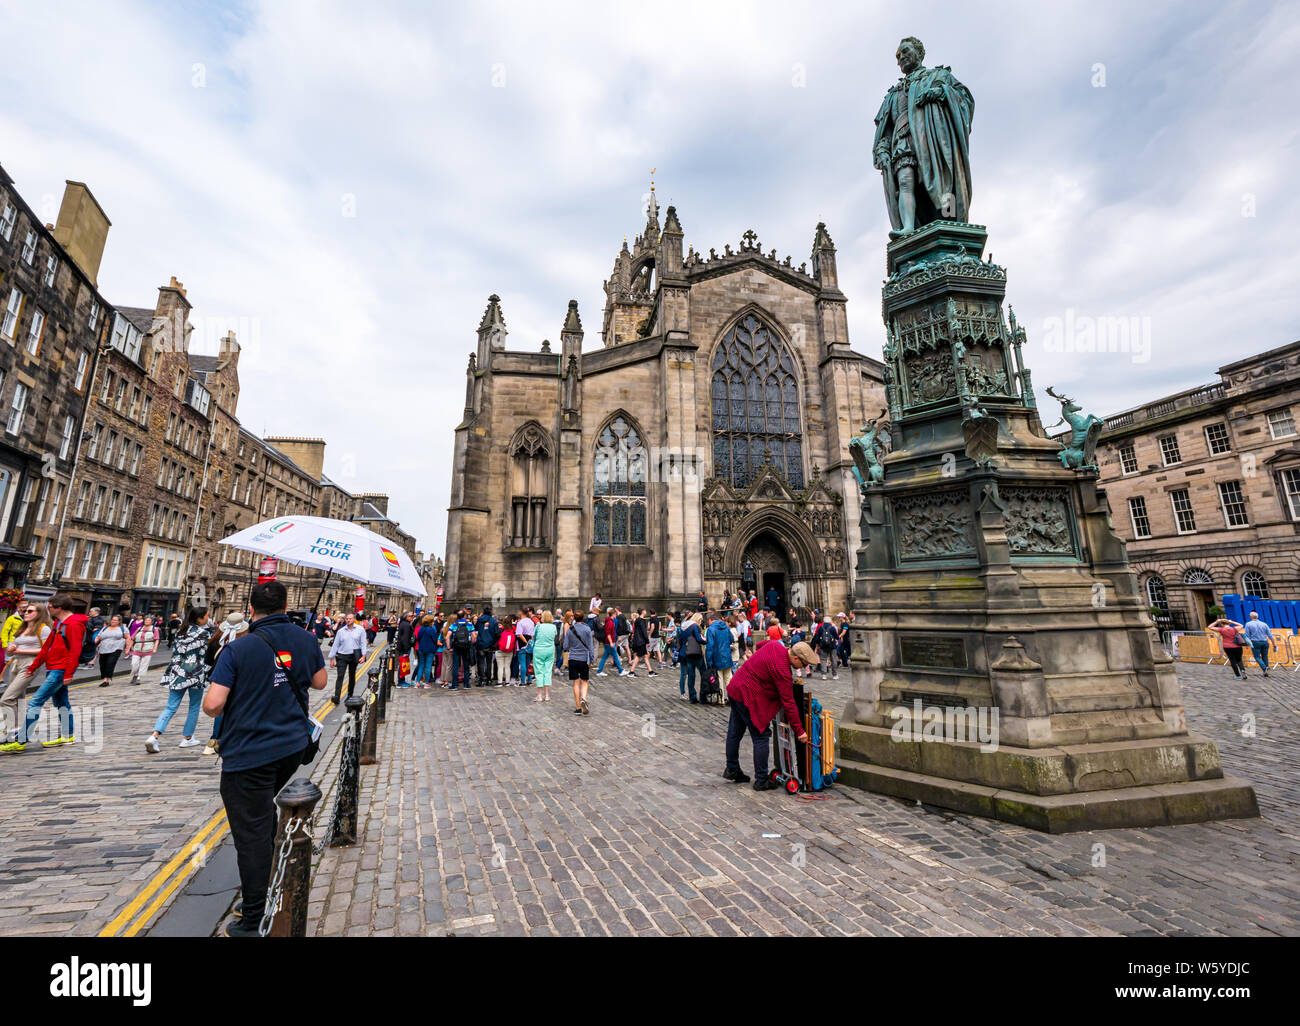 Royal Mile besetzt mit Touristen im St Giles Kathedrale mit 5. Herzog von buccleuch Statue, Edinburgh, Schottland, Großbritannien Stockfoto